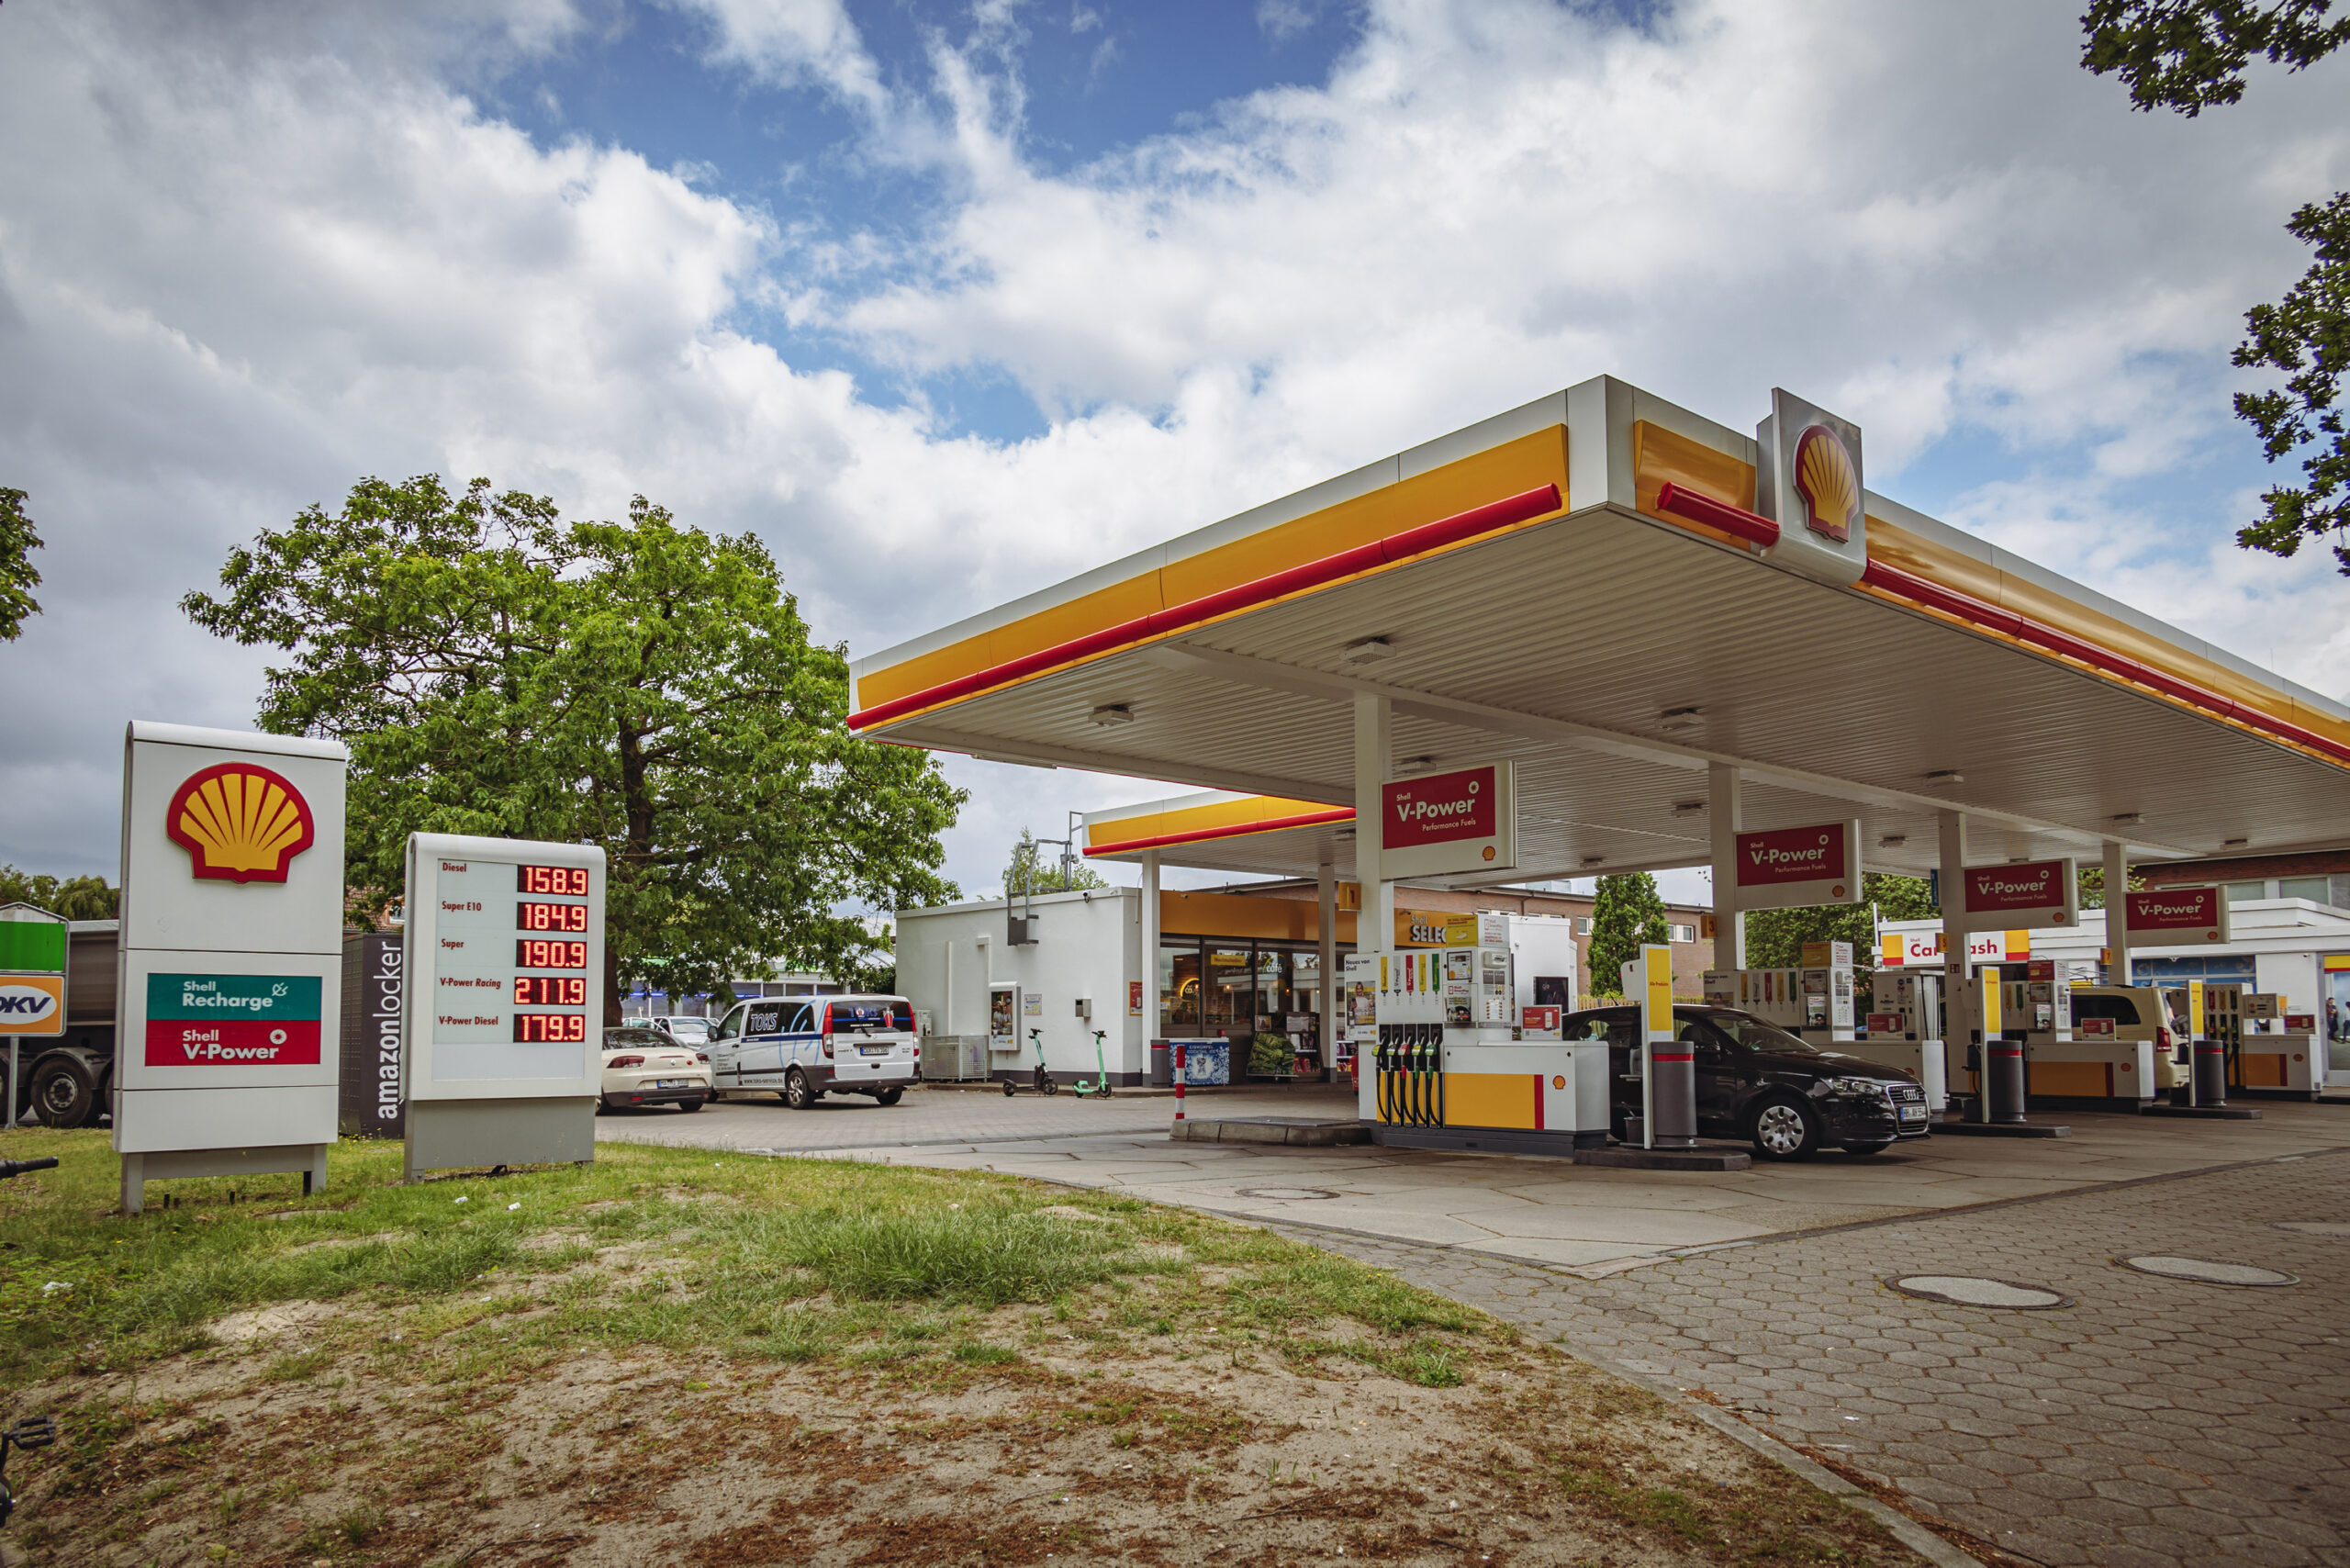 Bei der Shell-Tankstelle Alsterkrugchaussee 431 in Groß Borstel kam es zu der fatalen Sprit-Verwechslung.